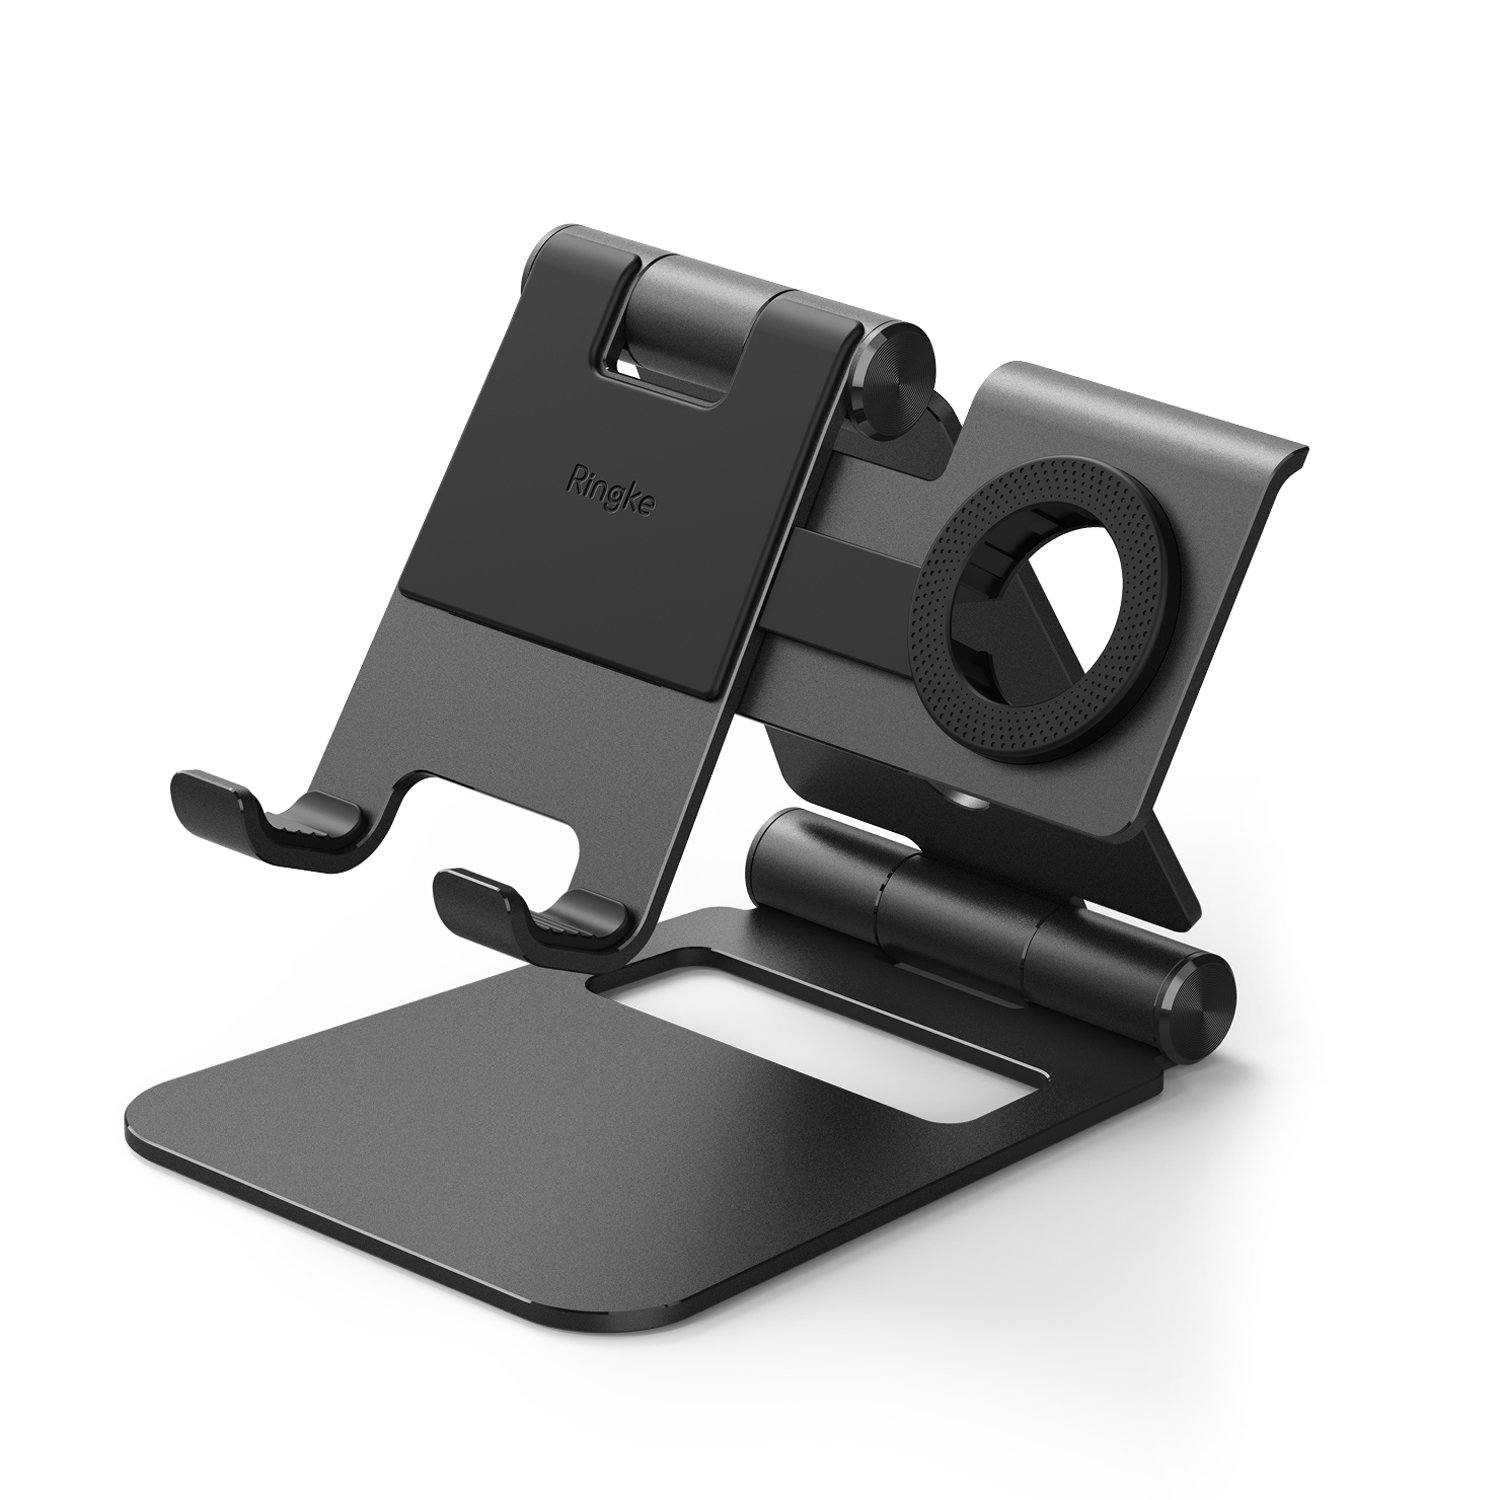 Ringke Super Folding Stand for Smart Phone/Apple watch, Black Default Ringke 